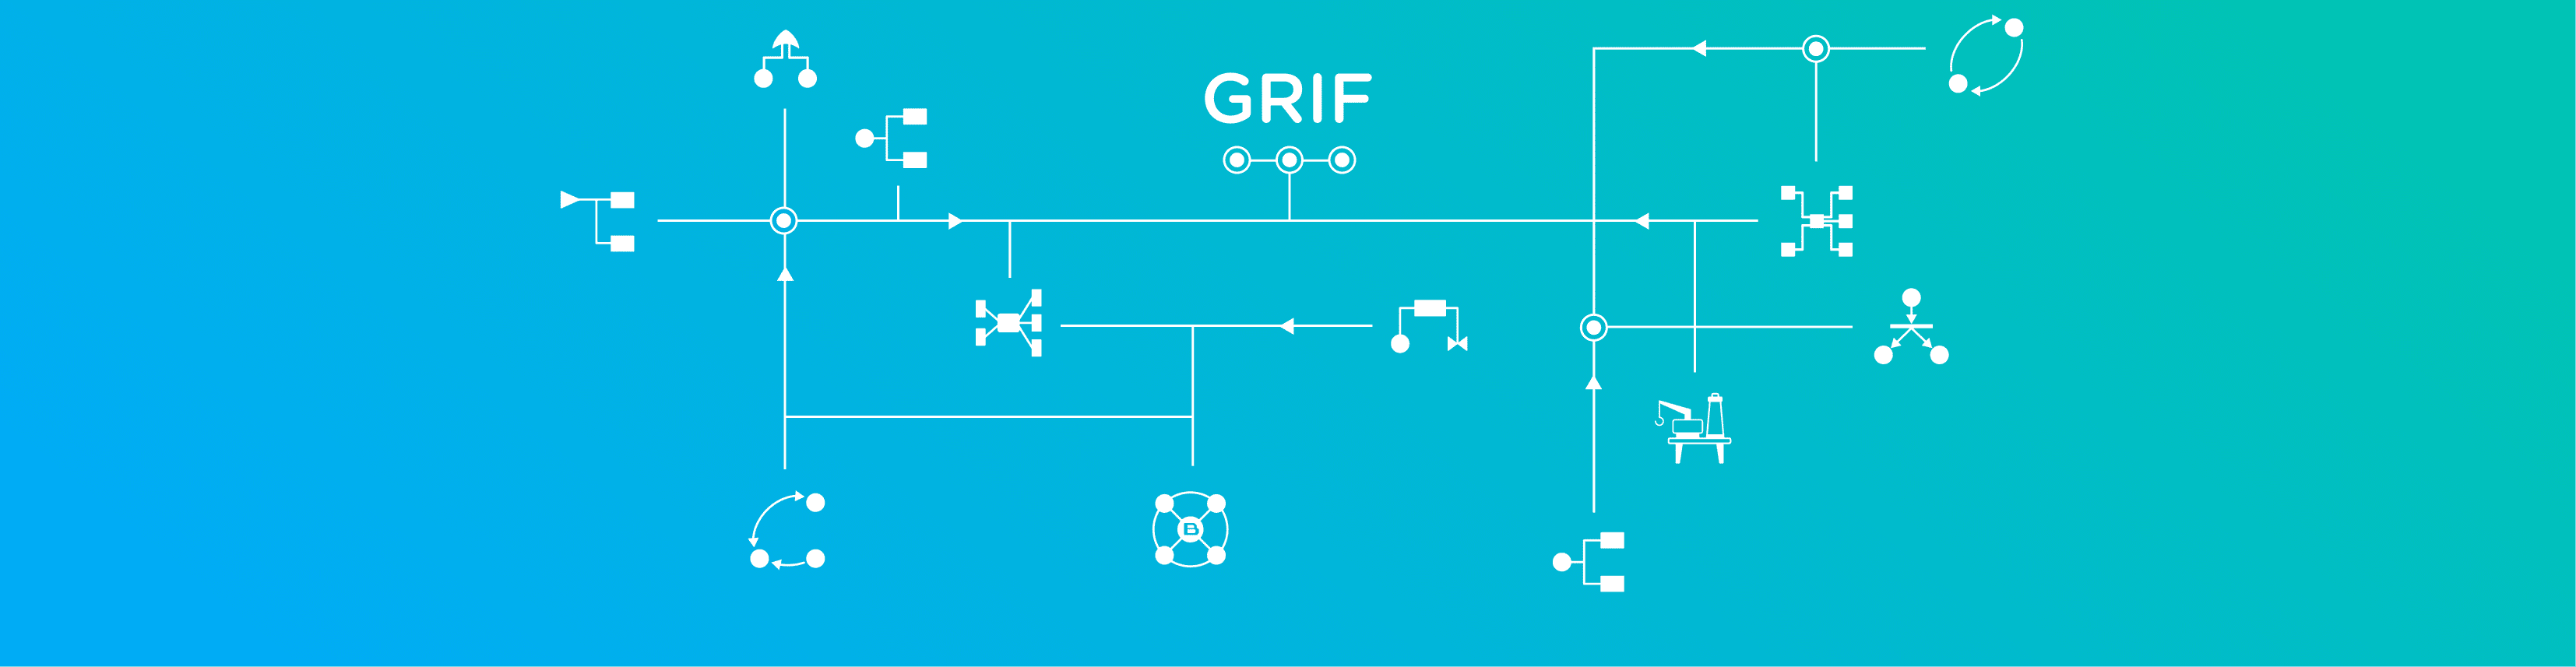 GRIF software suite 